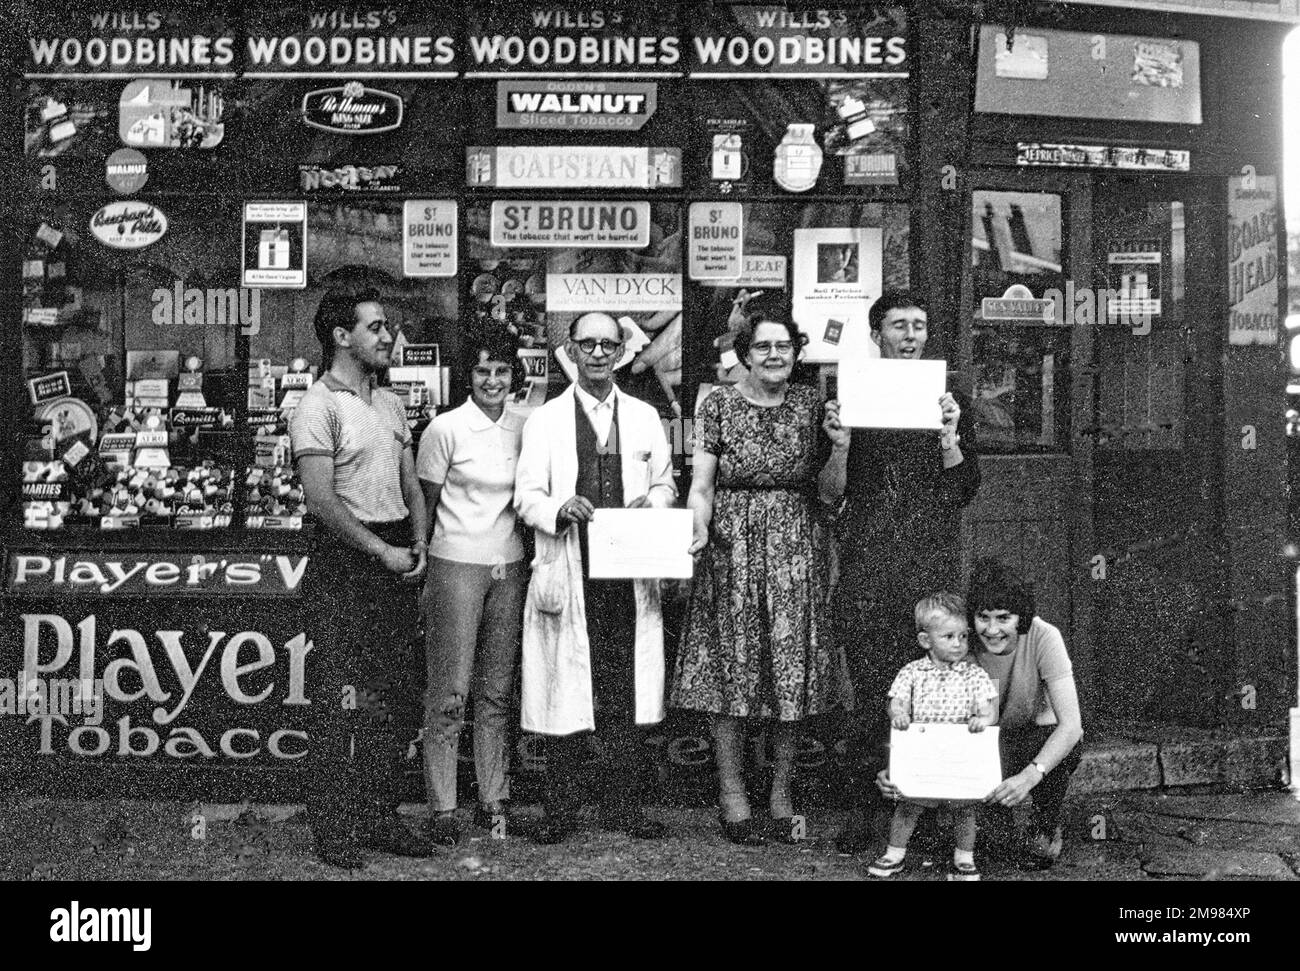 Dieser Süßwarenladen und Tabakladen wurde Ende der 1960er Jahre von Mr. Und Mrs. Price geführt. Es war an der Ecke Sumner Road und Garnies Street in Peckham, London. Der Bereich wurde kurz nach der Aufnahme dieses Fotos umgestaltet - die Hinweise auf dem Display lauteten „Shop soon close“. Stockfoto